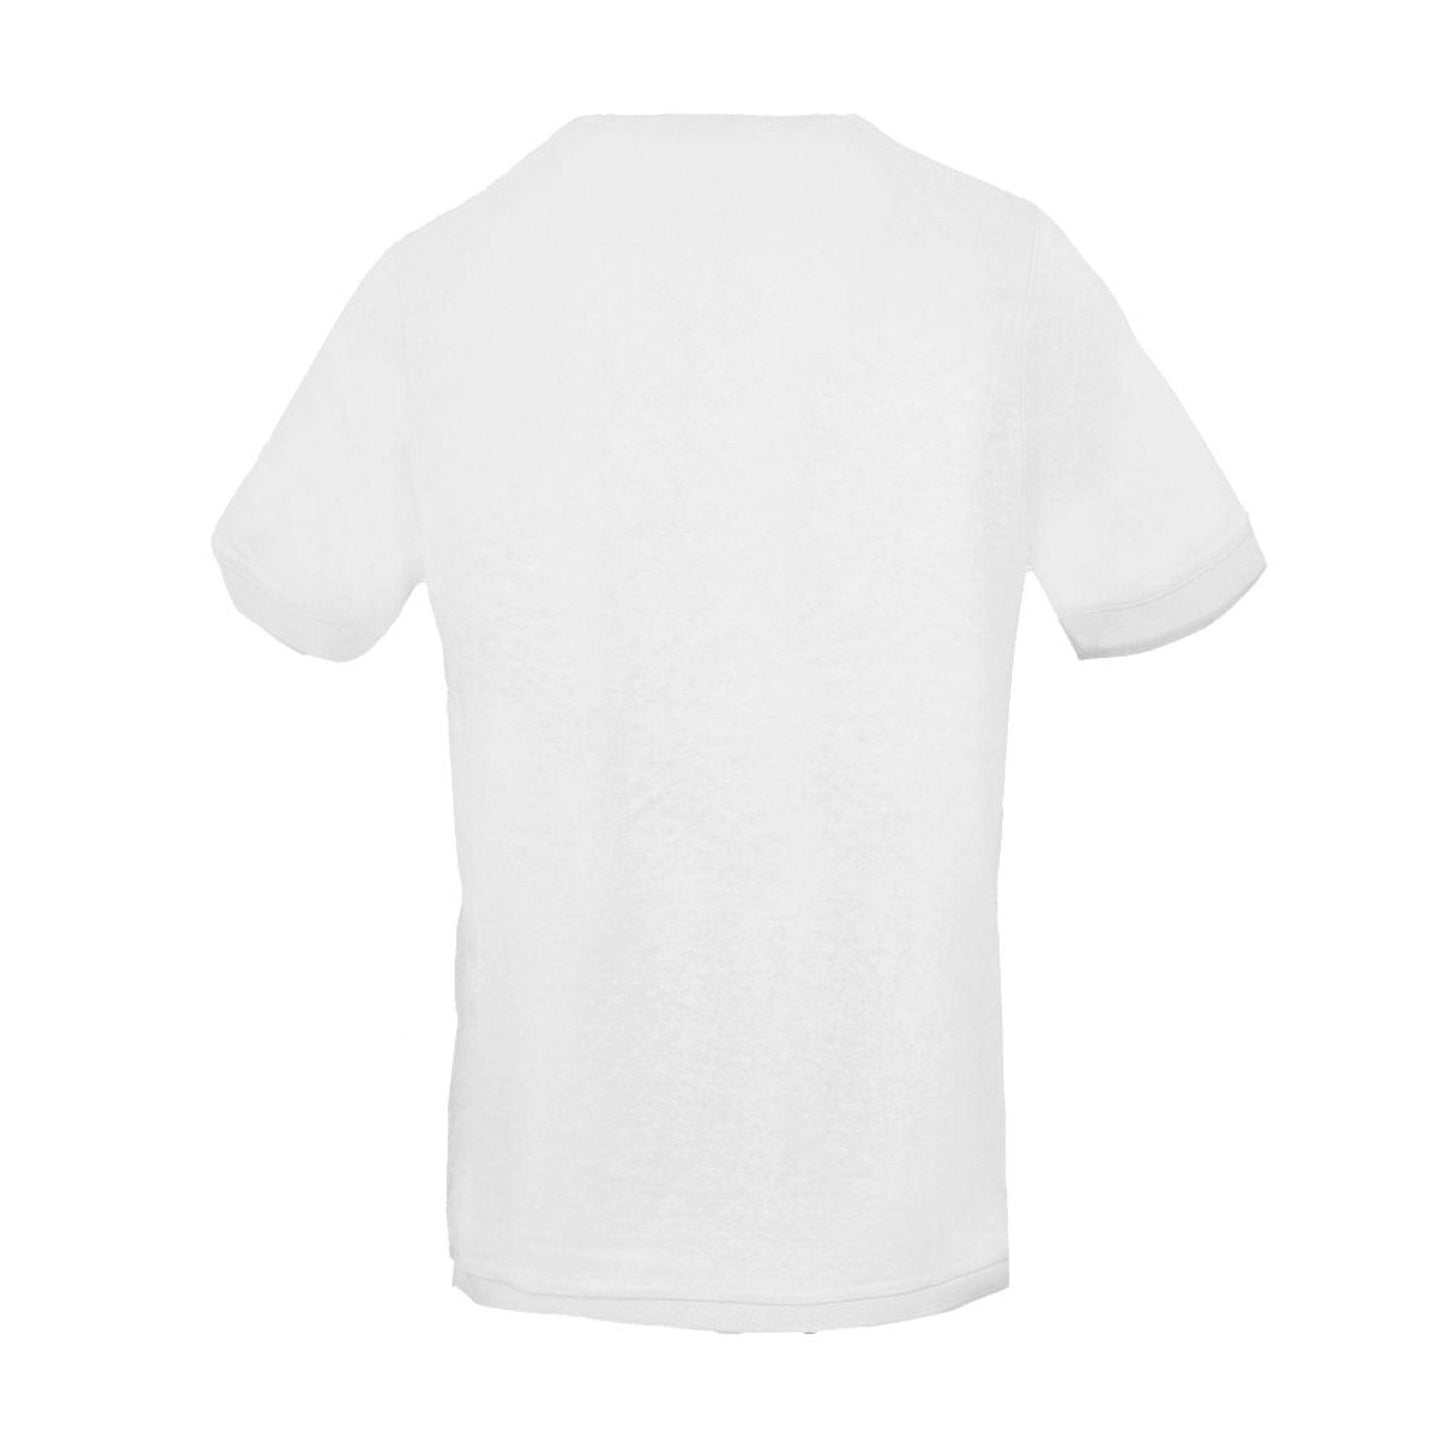 Zenobi Men T-shirts - White Brand T-shirts - T-Shirt - Guocali